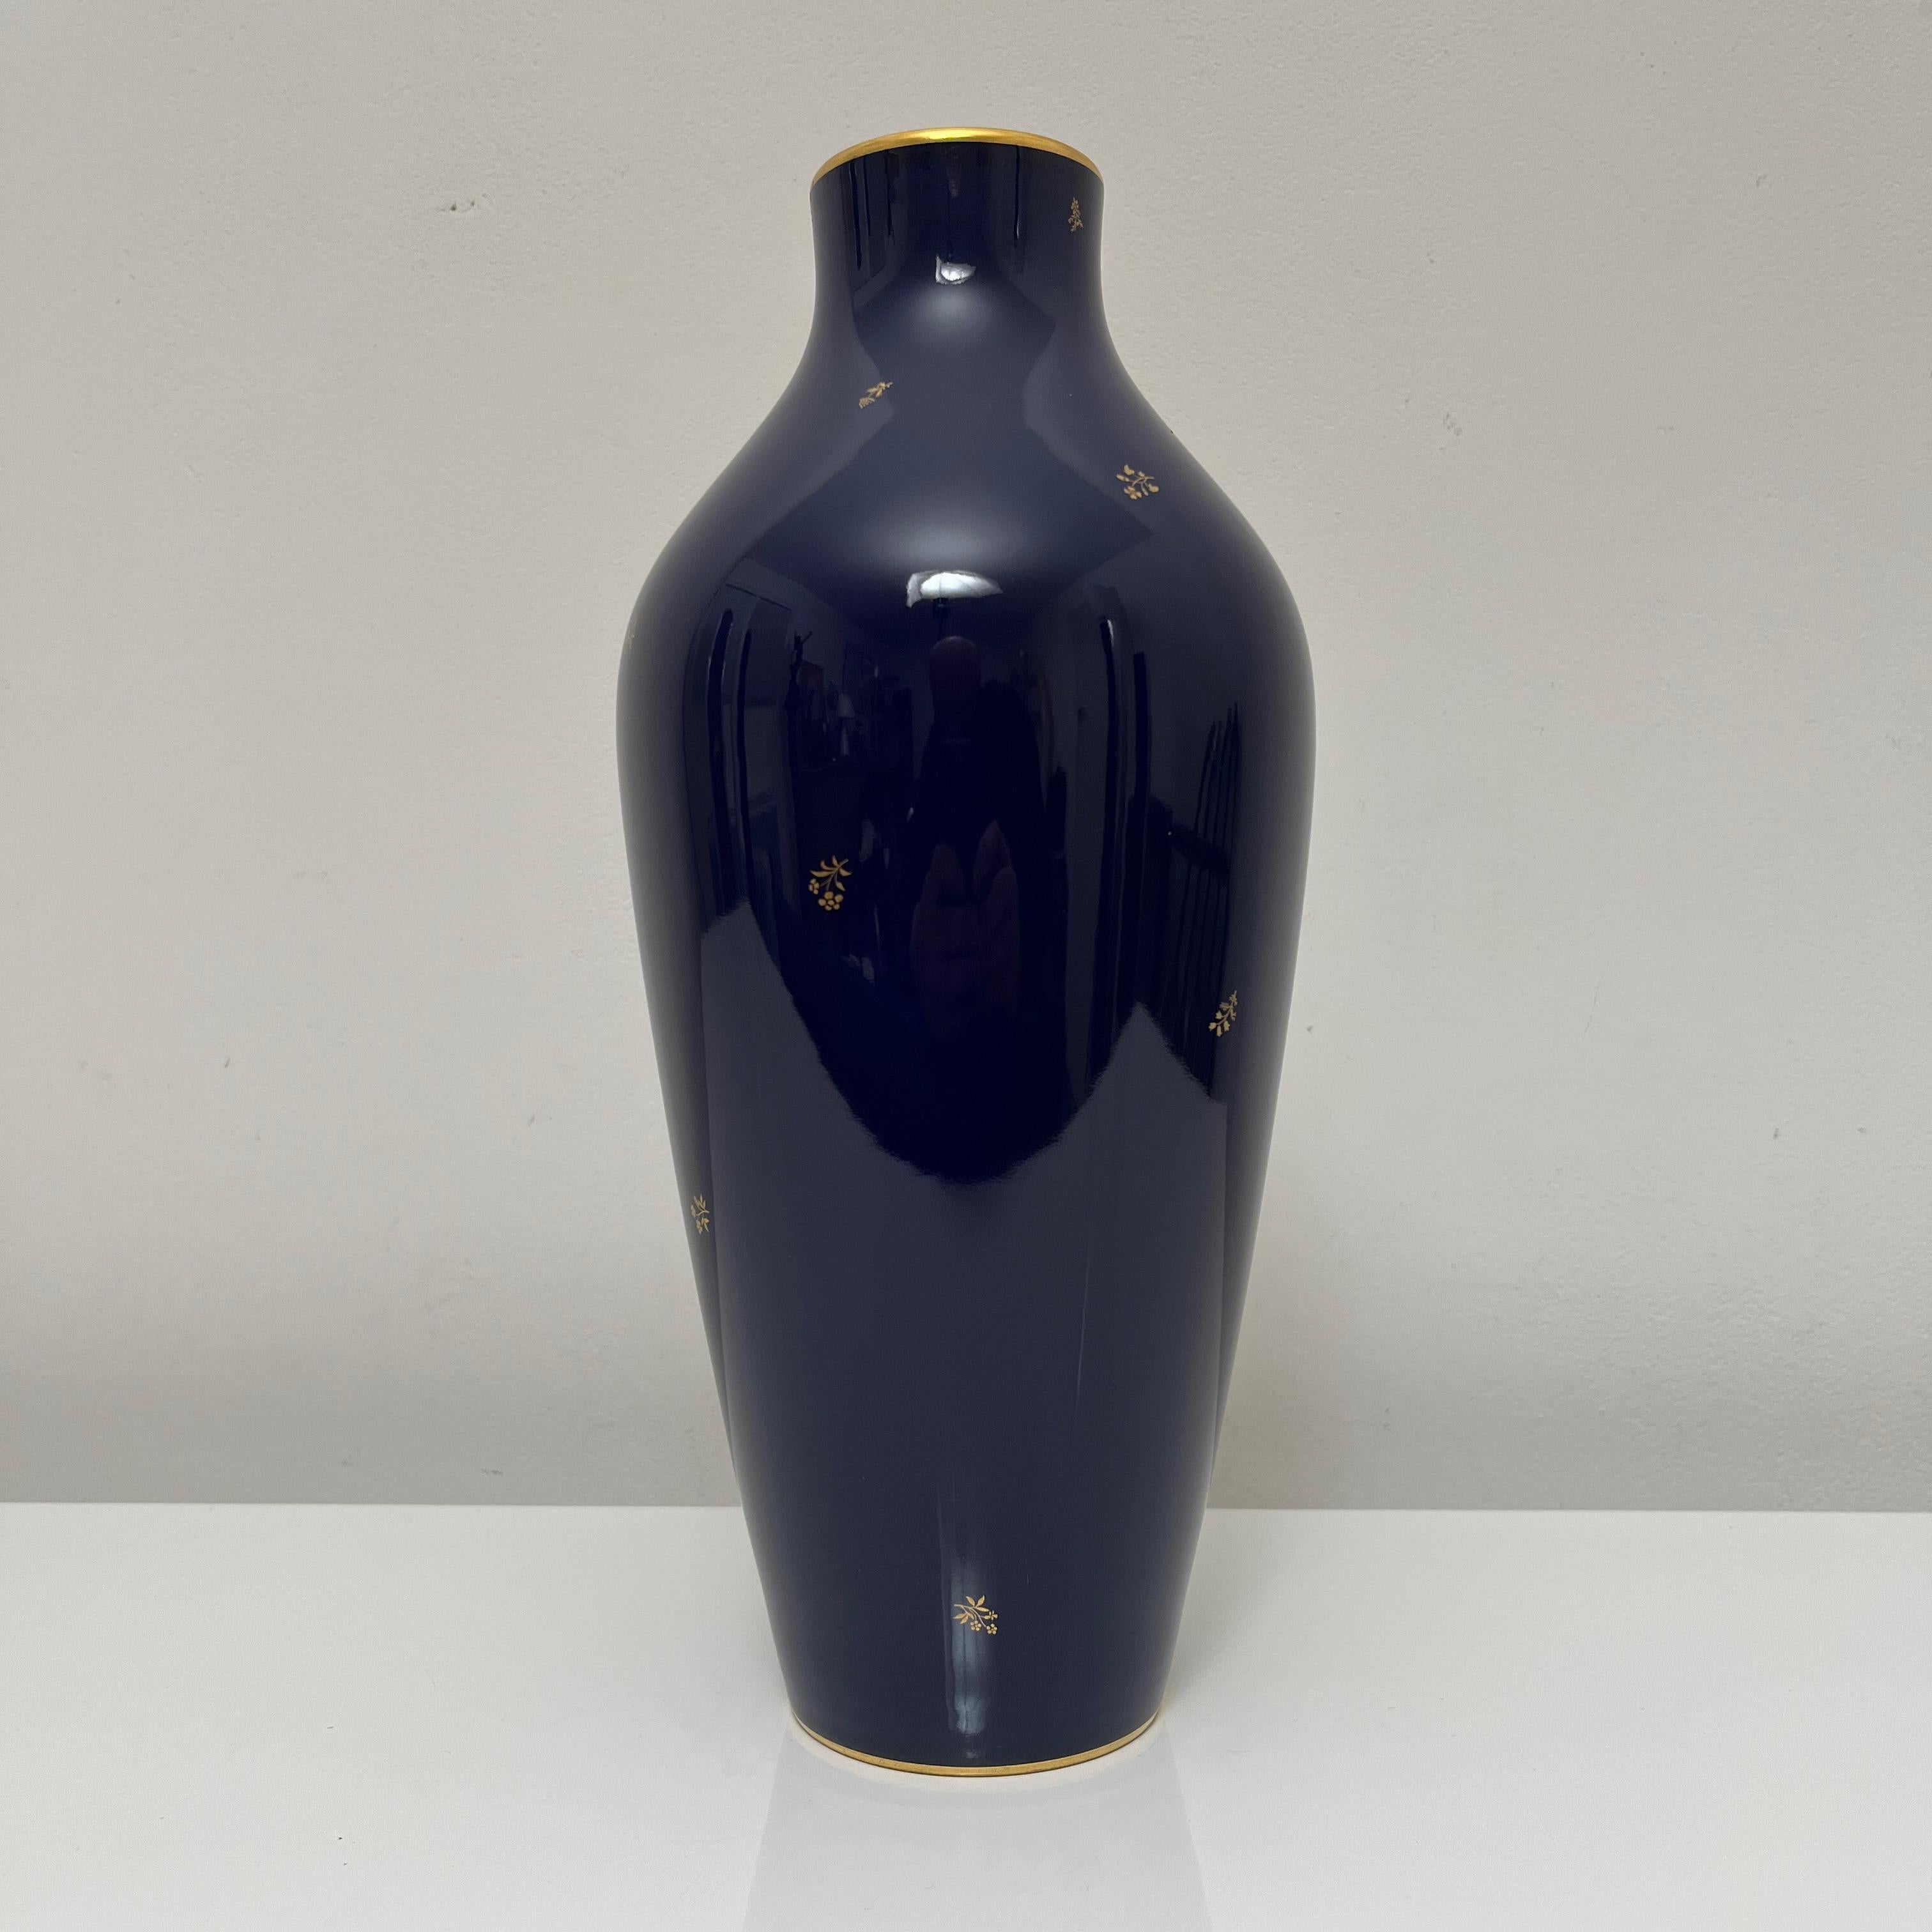 Superbe vase de la manufacture Nationale de Sevres, connue par sous émaillage exceptionnel de couleur bleu cobalt appelé 